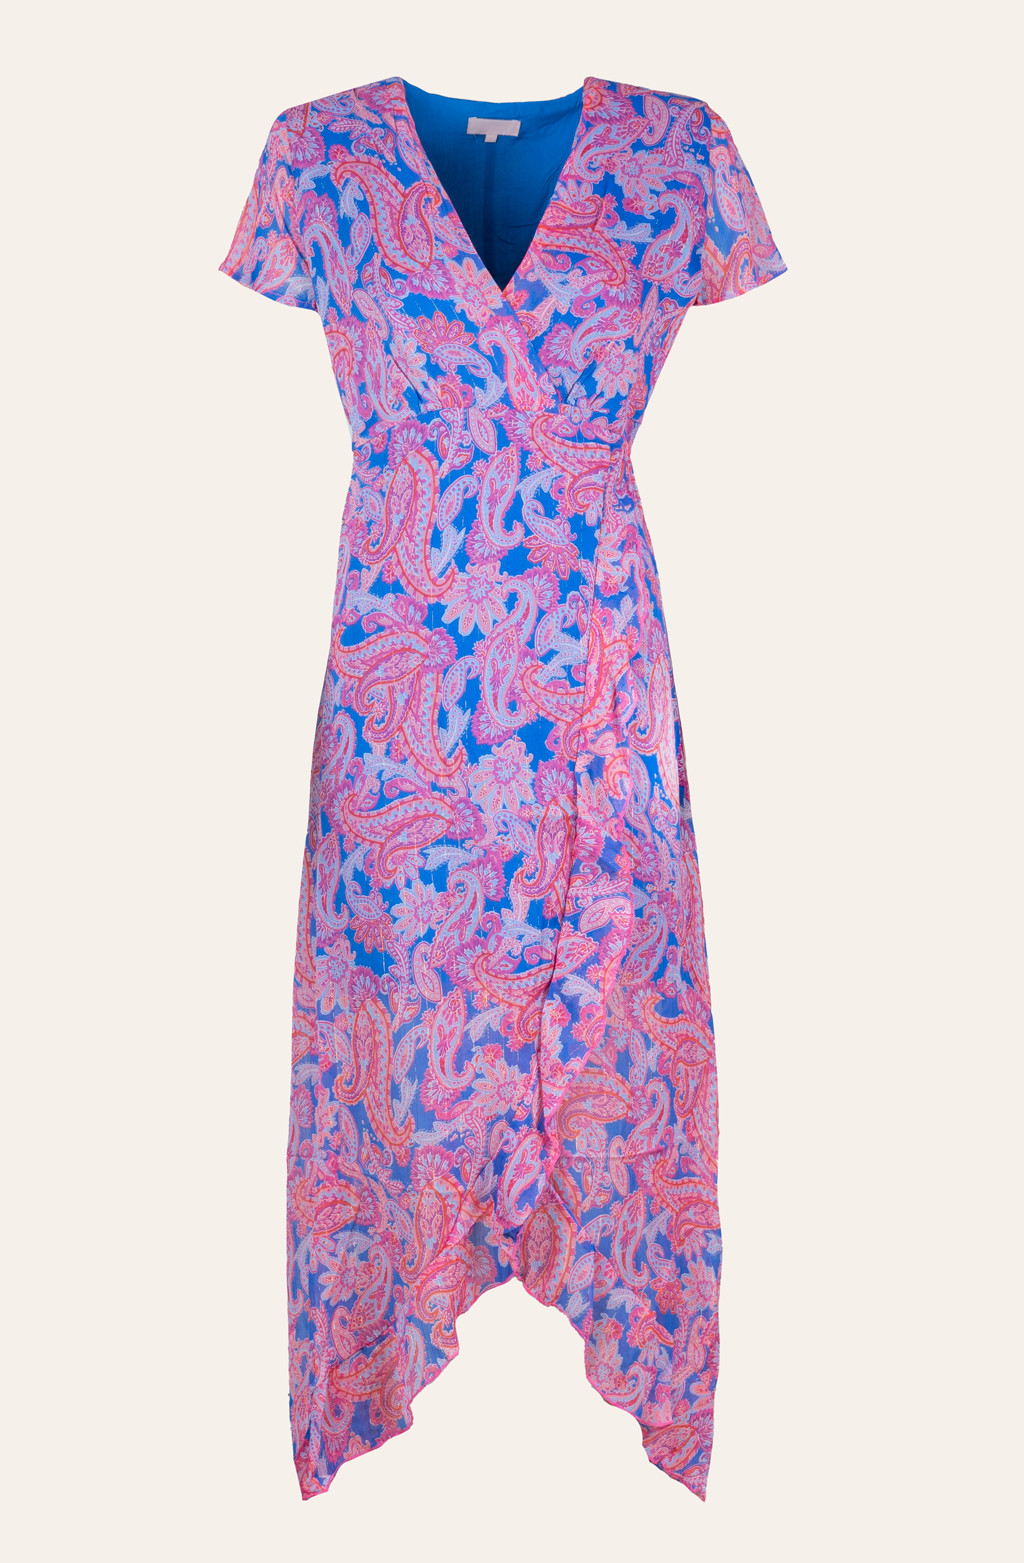 Langes Wickelkleid mit floralem Print (Blau-Pink)